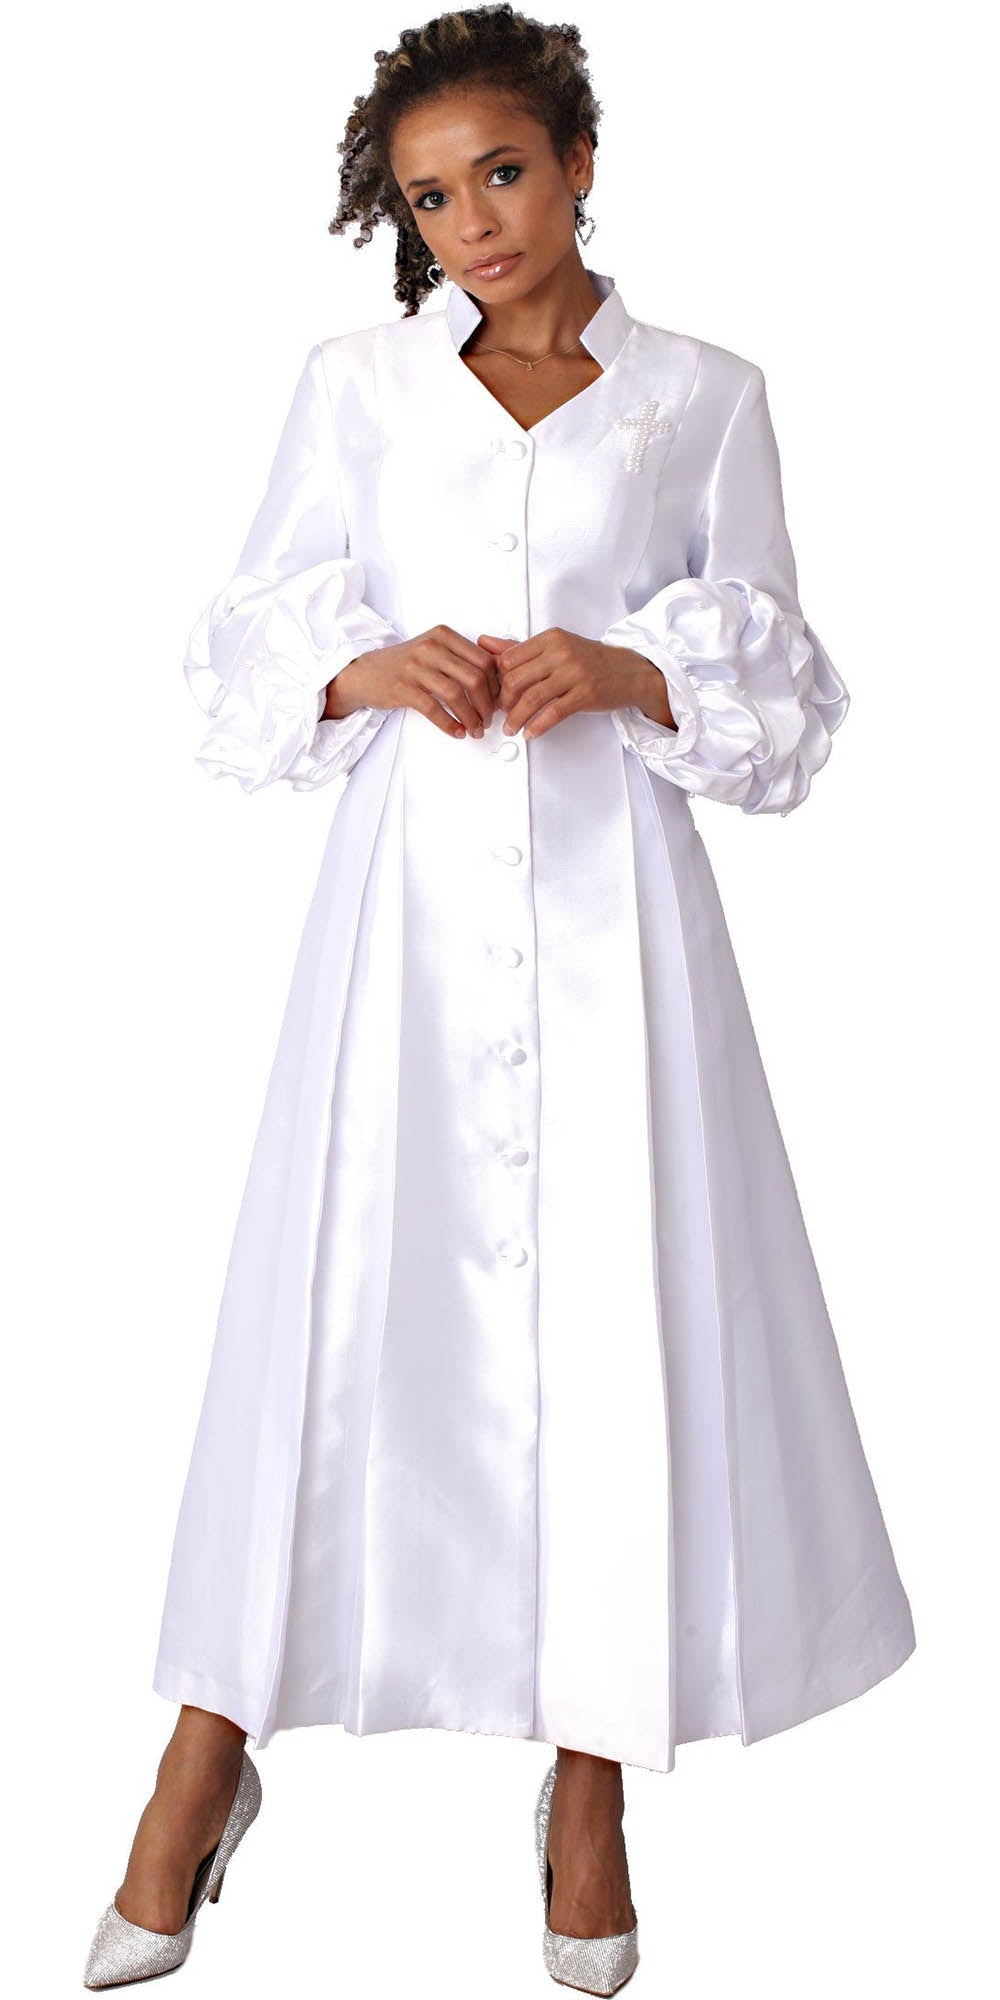 Tally Taylor - 4730 - White White - Women's Clergy Robe